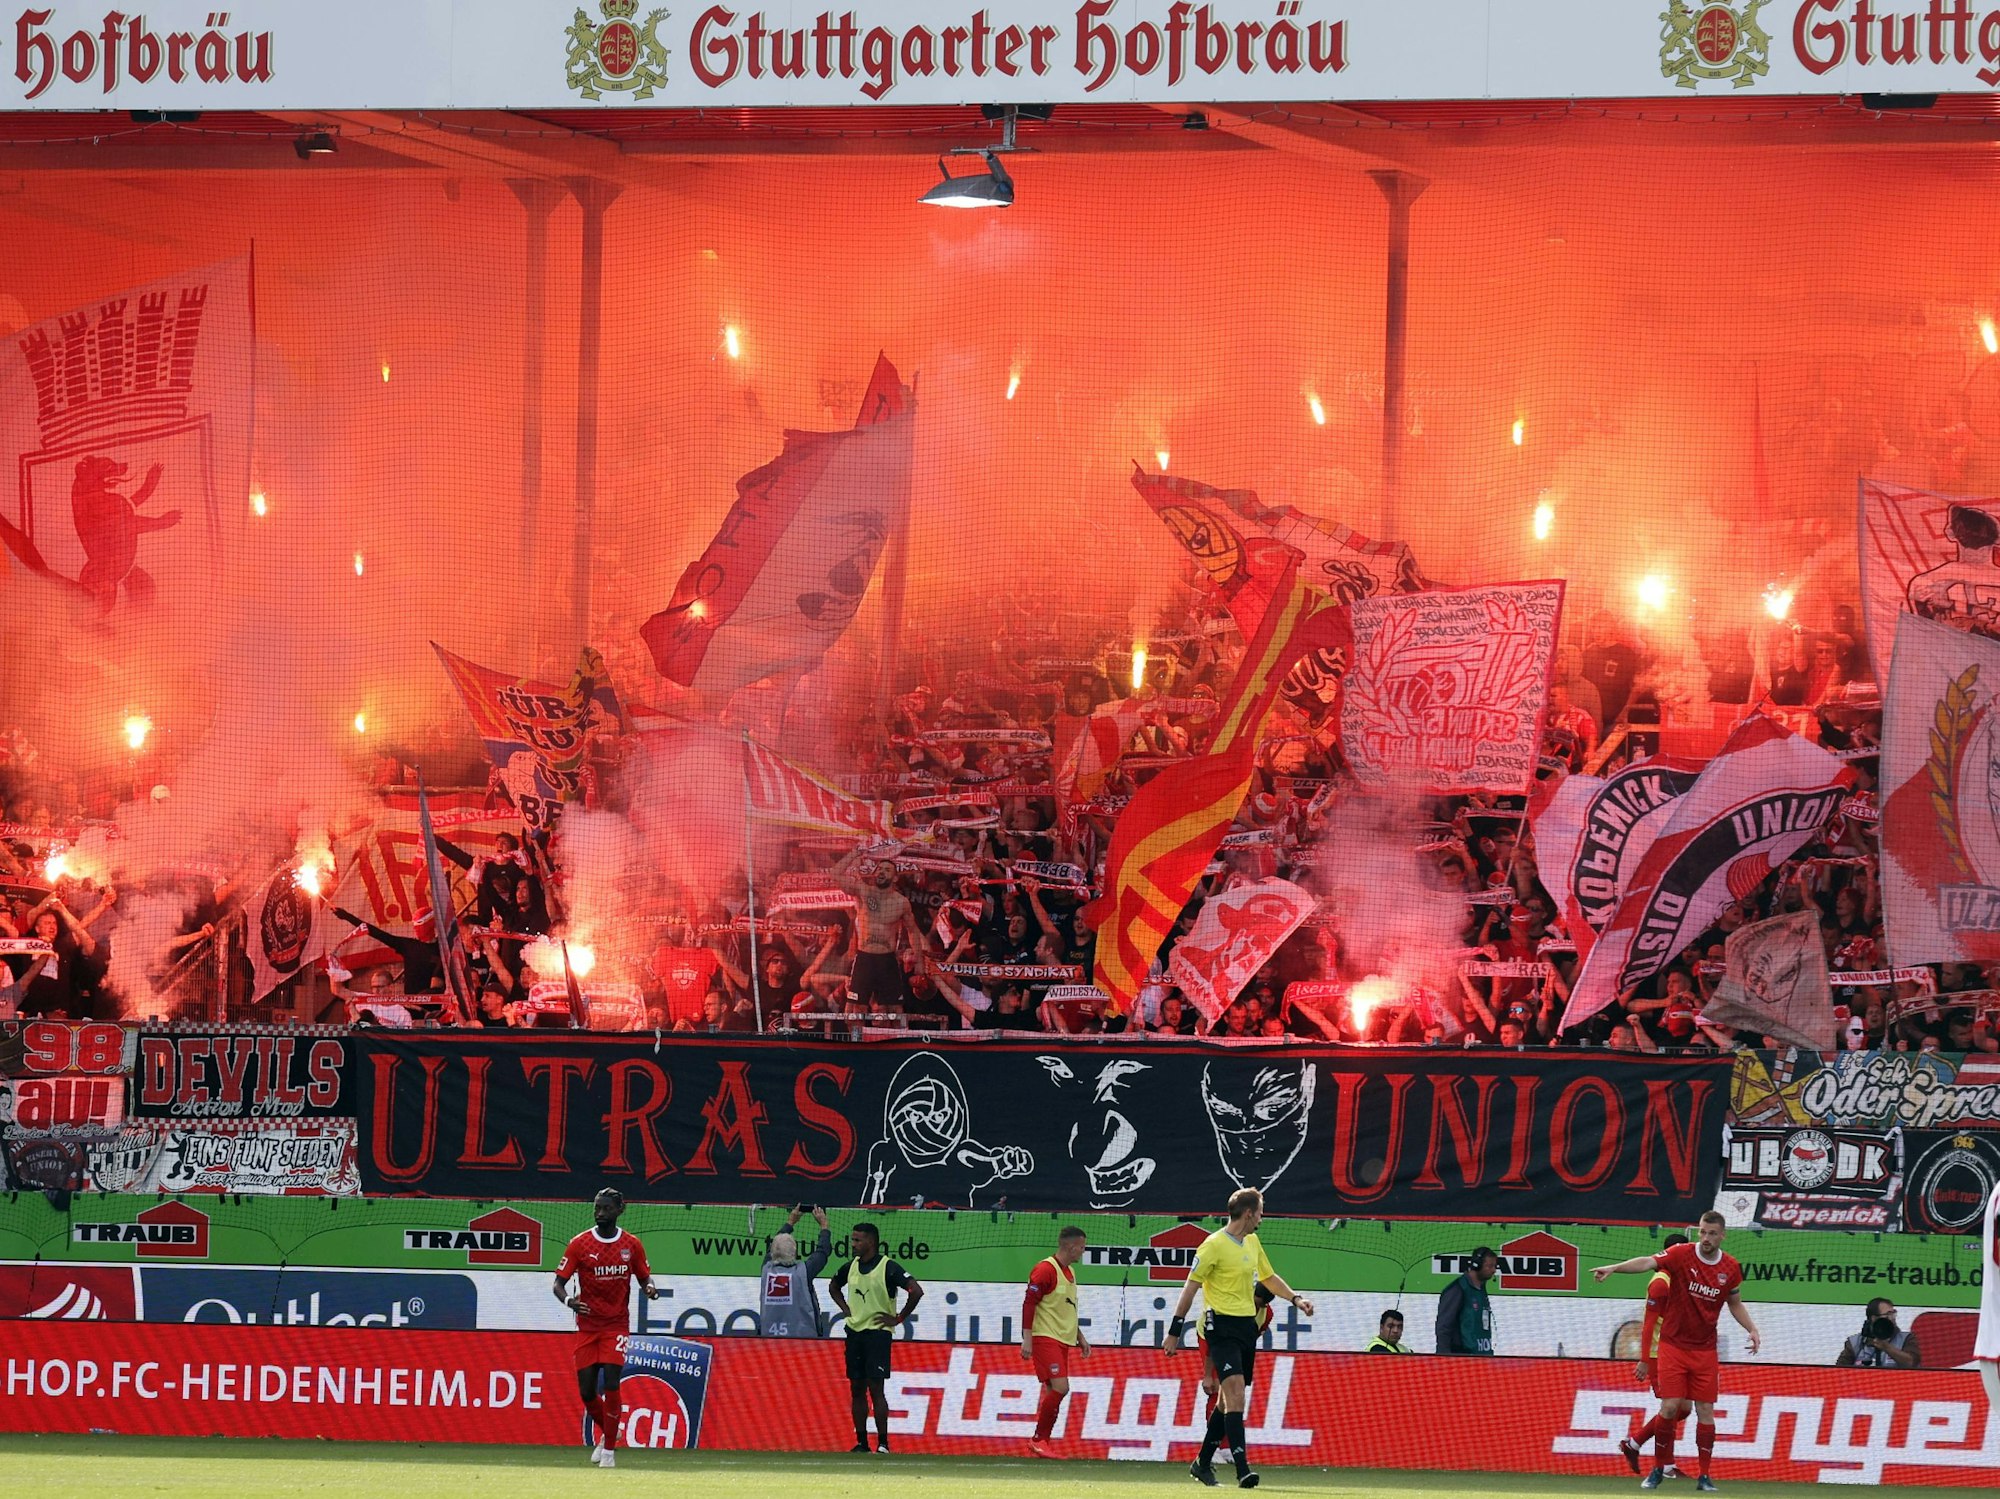 Union-Fans zünden in Heidenheim